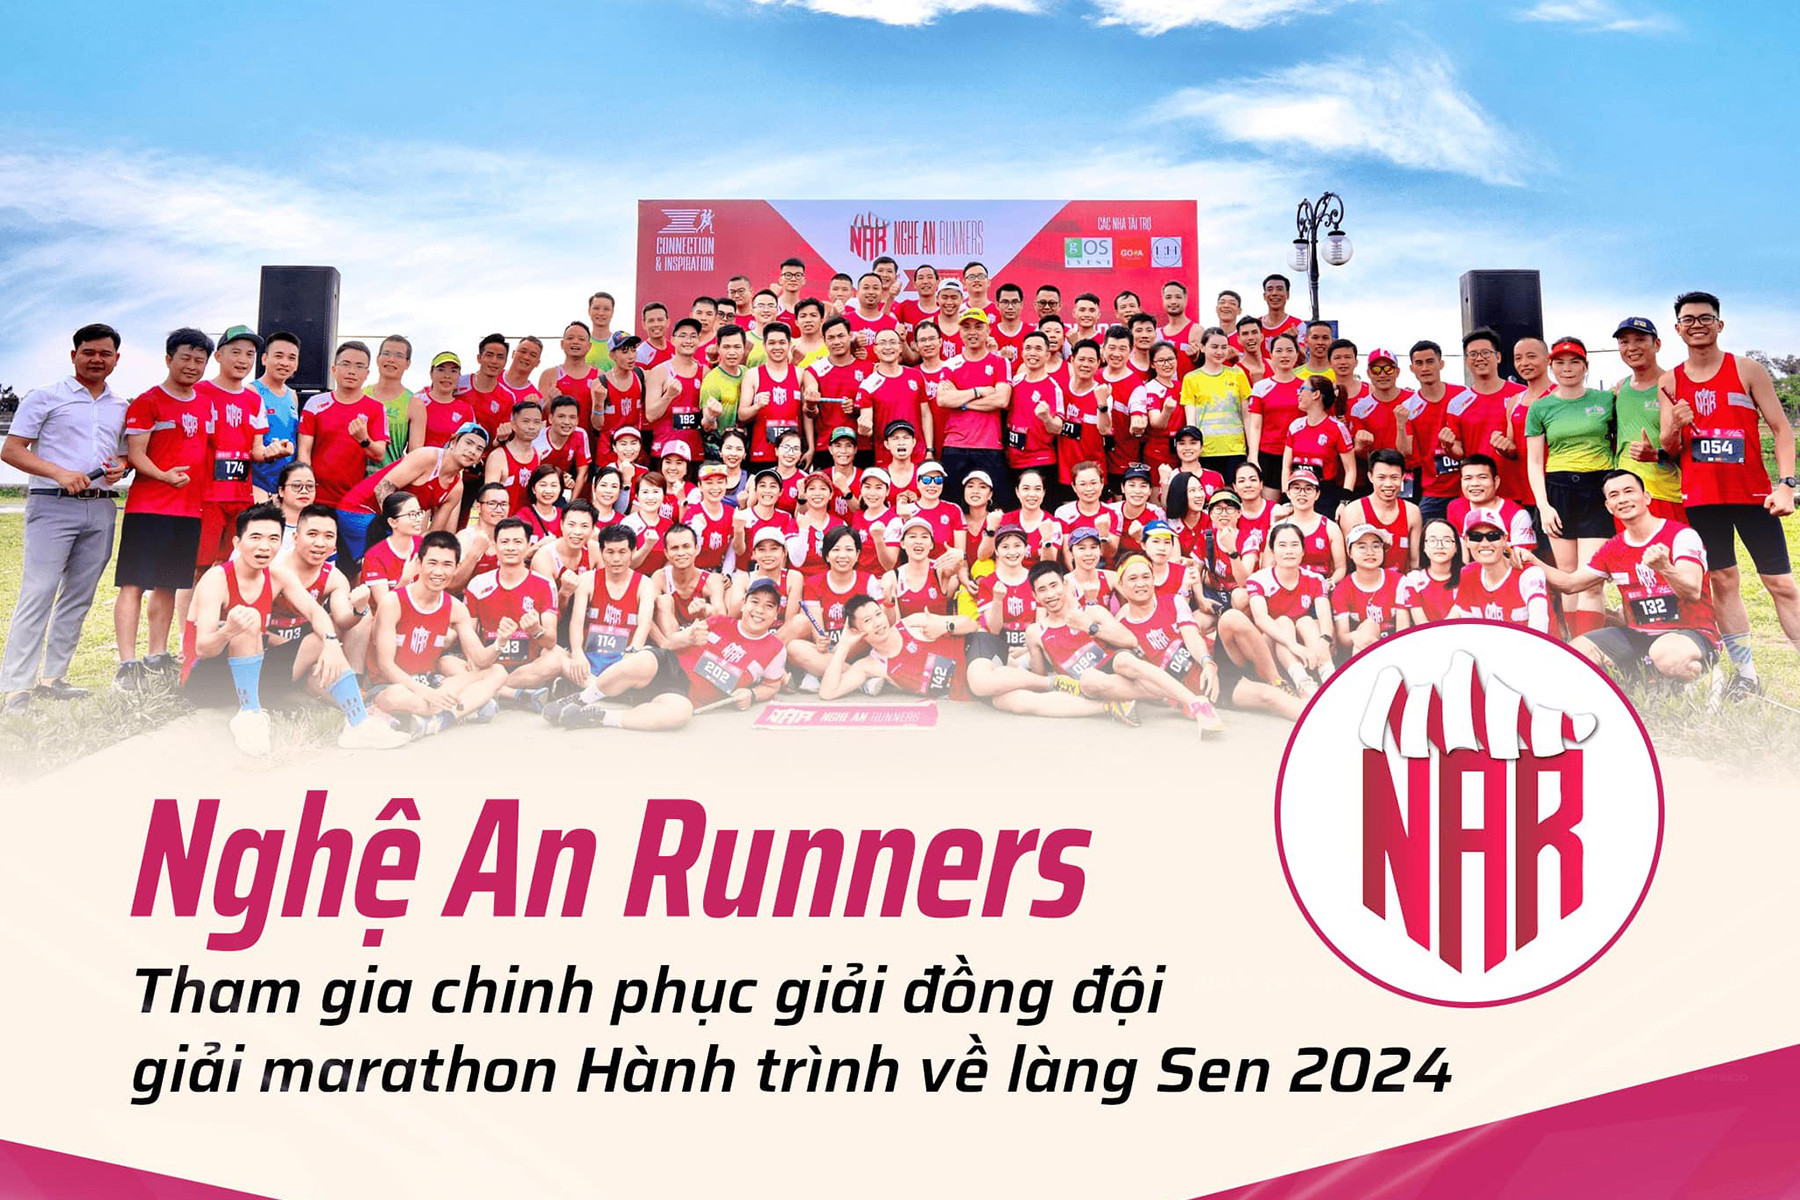  CLB Nghệ An Runners 'vô địch' số lượng VĐV tại Hành trình về Làng Sen 2024